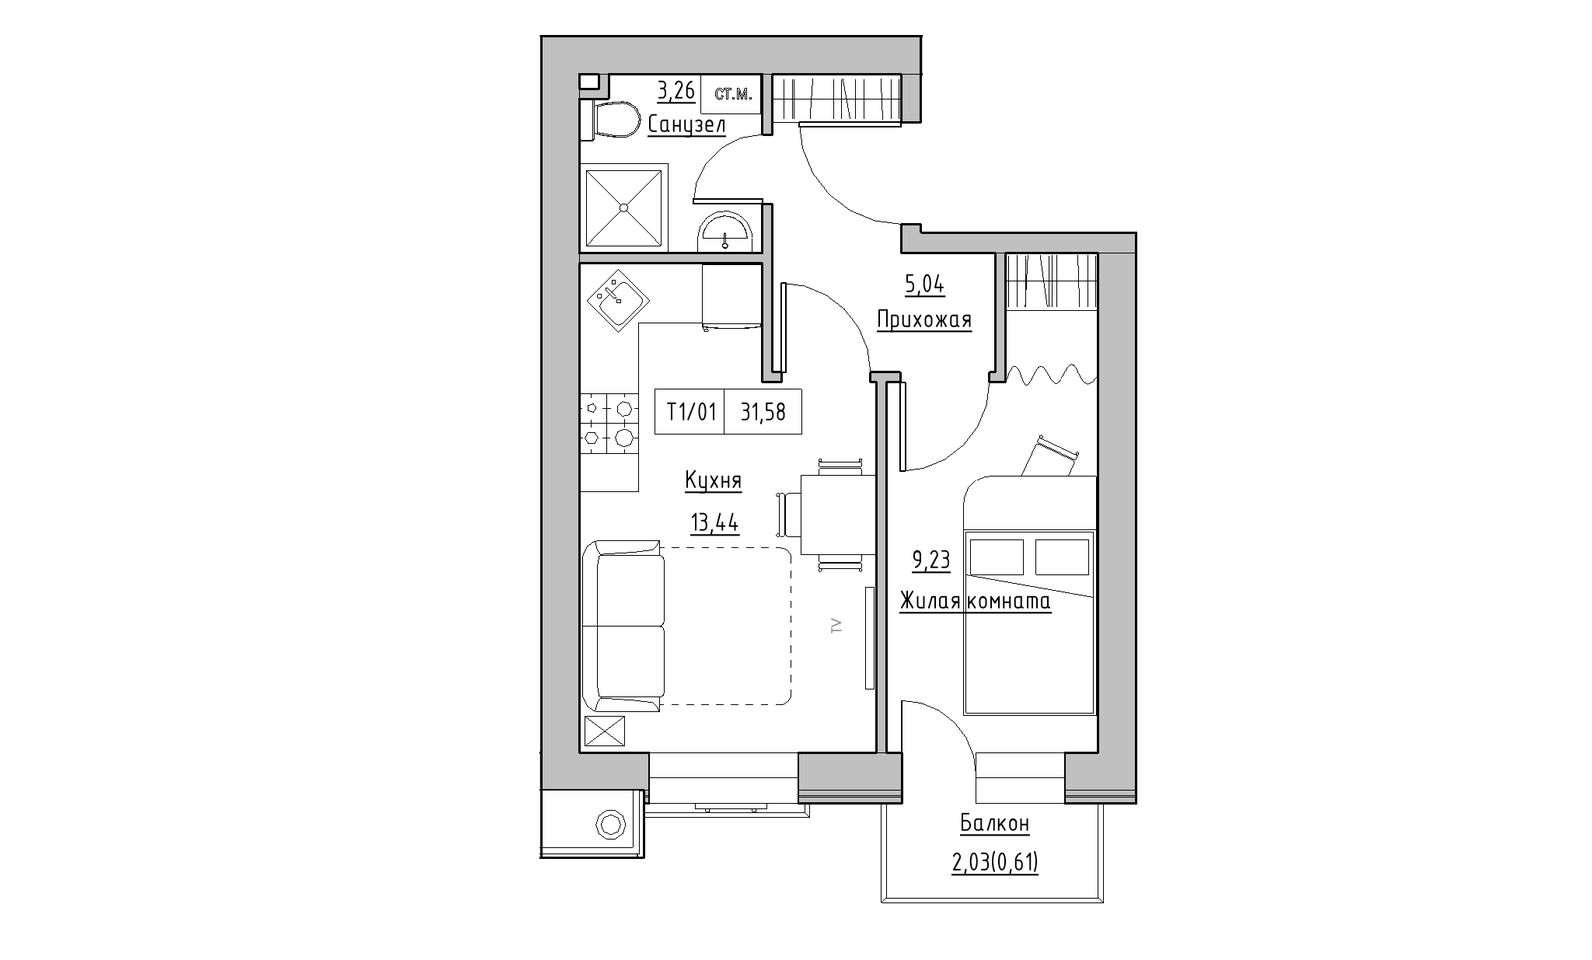 Планировка 1-к квартира площей 31.58м2, KS-014-05/0003.